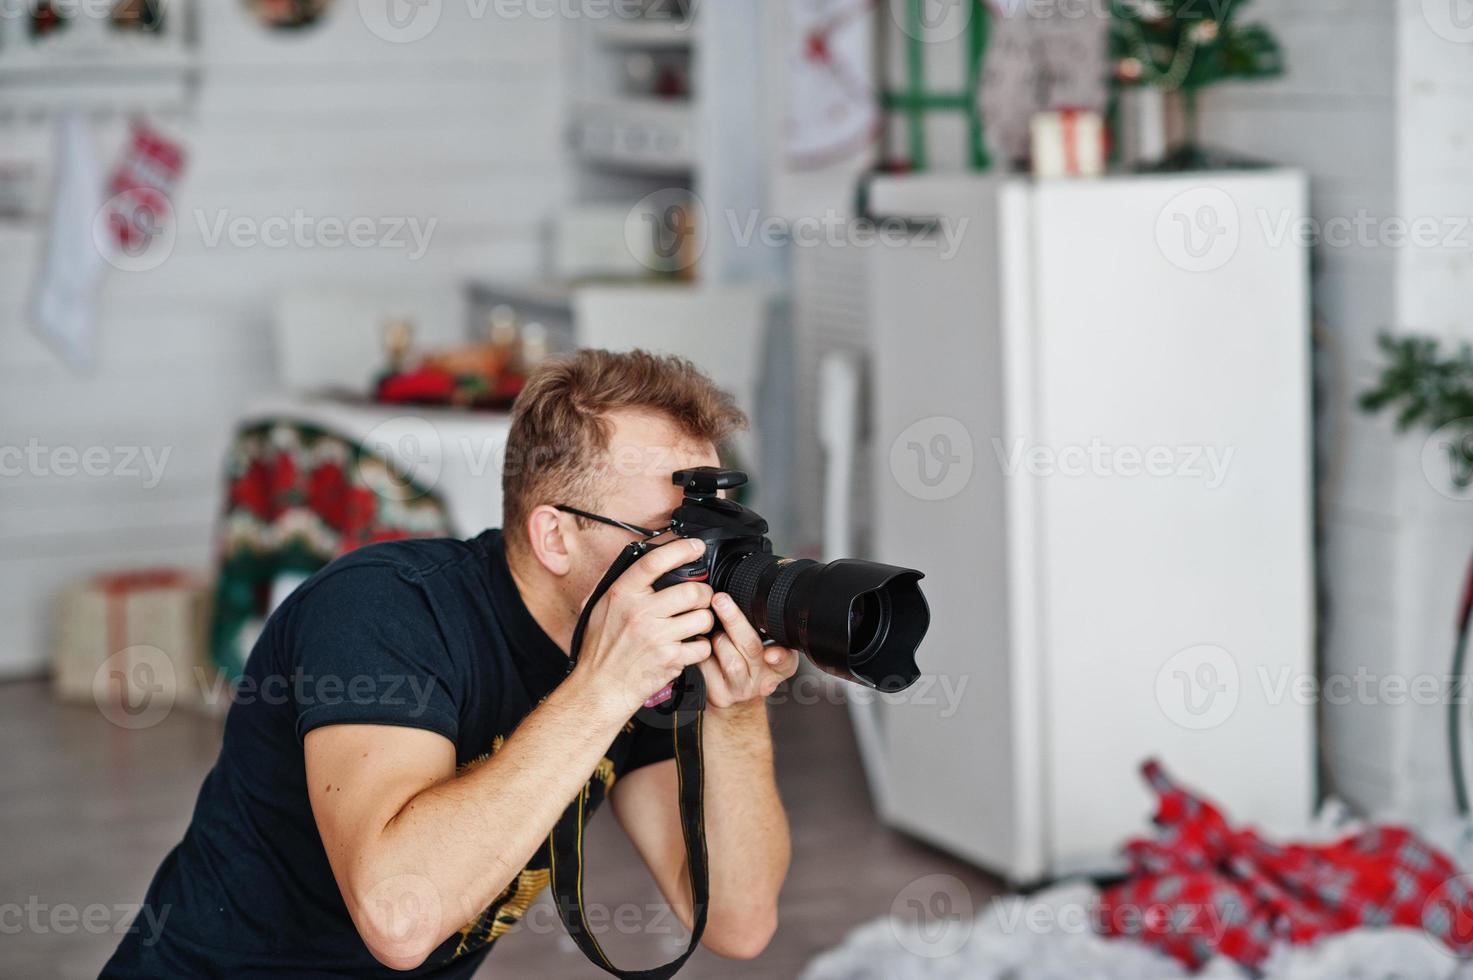 photographe homme prise de vue en studio. photographe professionnel sur le travail. photo